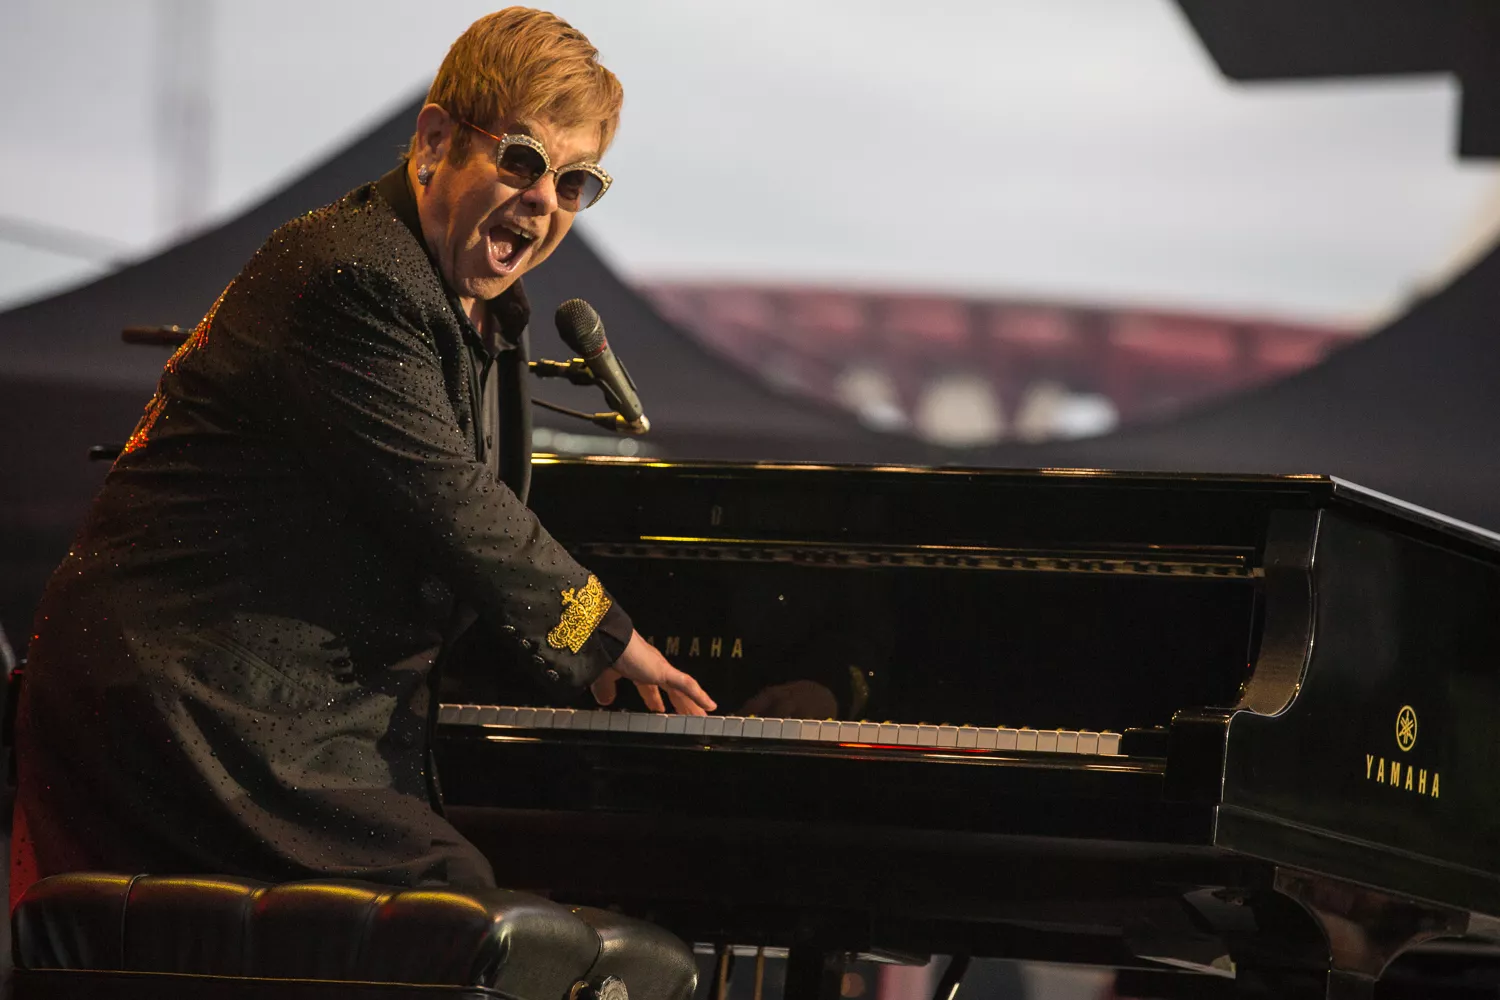 Medie: Sir Elton John trækker sig tilbage  fra turnélivet